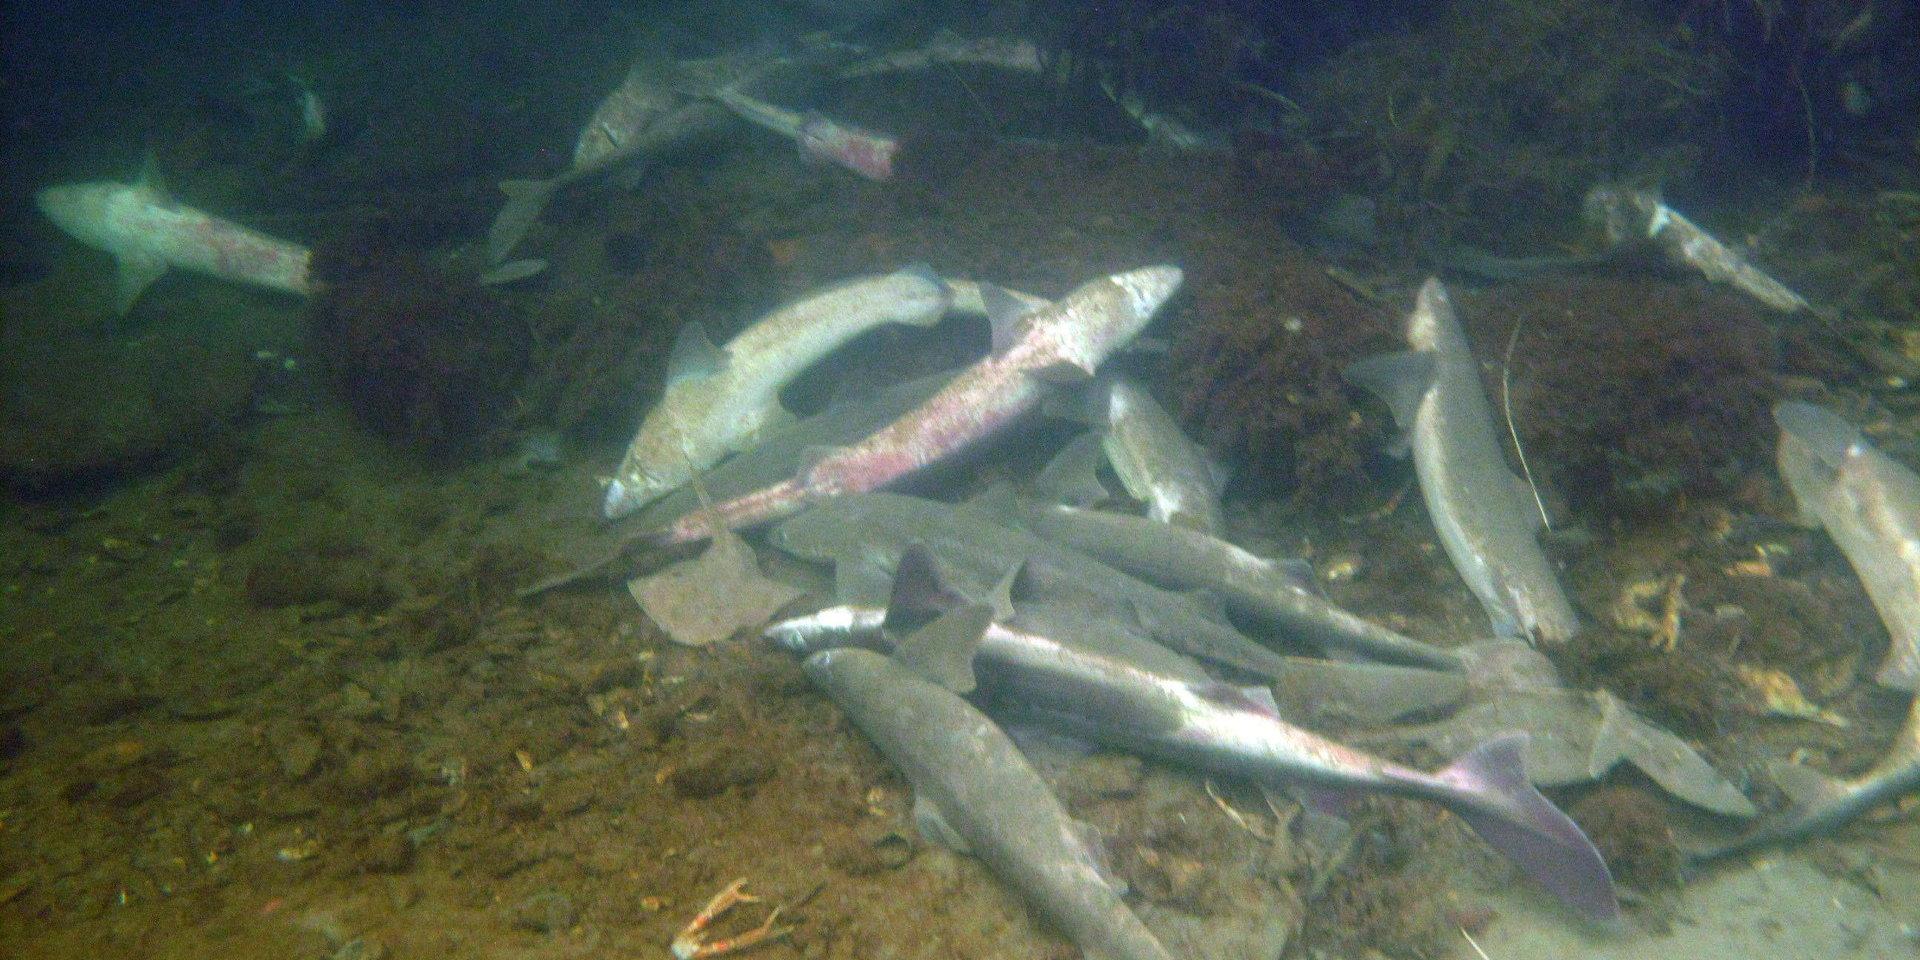 Ett hundratal döda och döende fiskar av de fridlysta arterna pigghaj, klorocka och knaggrocka hittades i hamnen i Lysekil i mars.